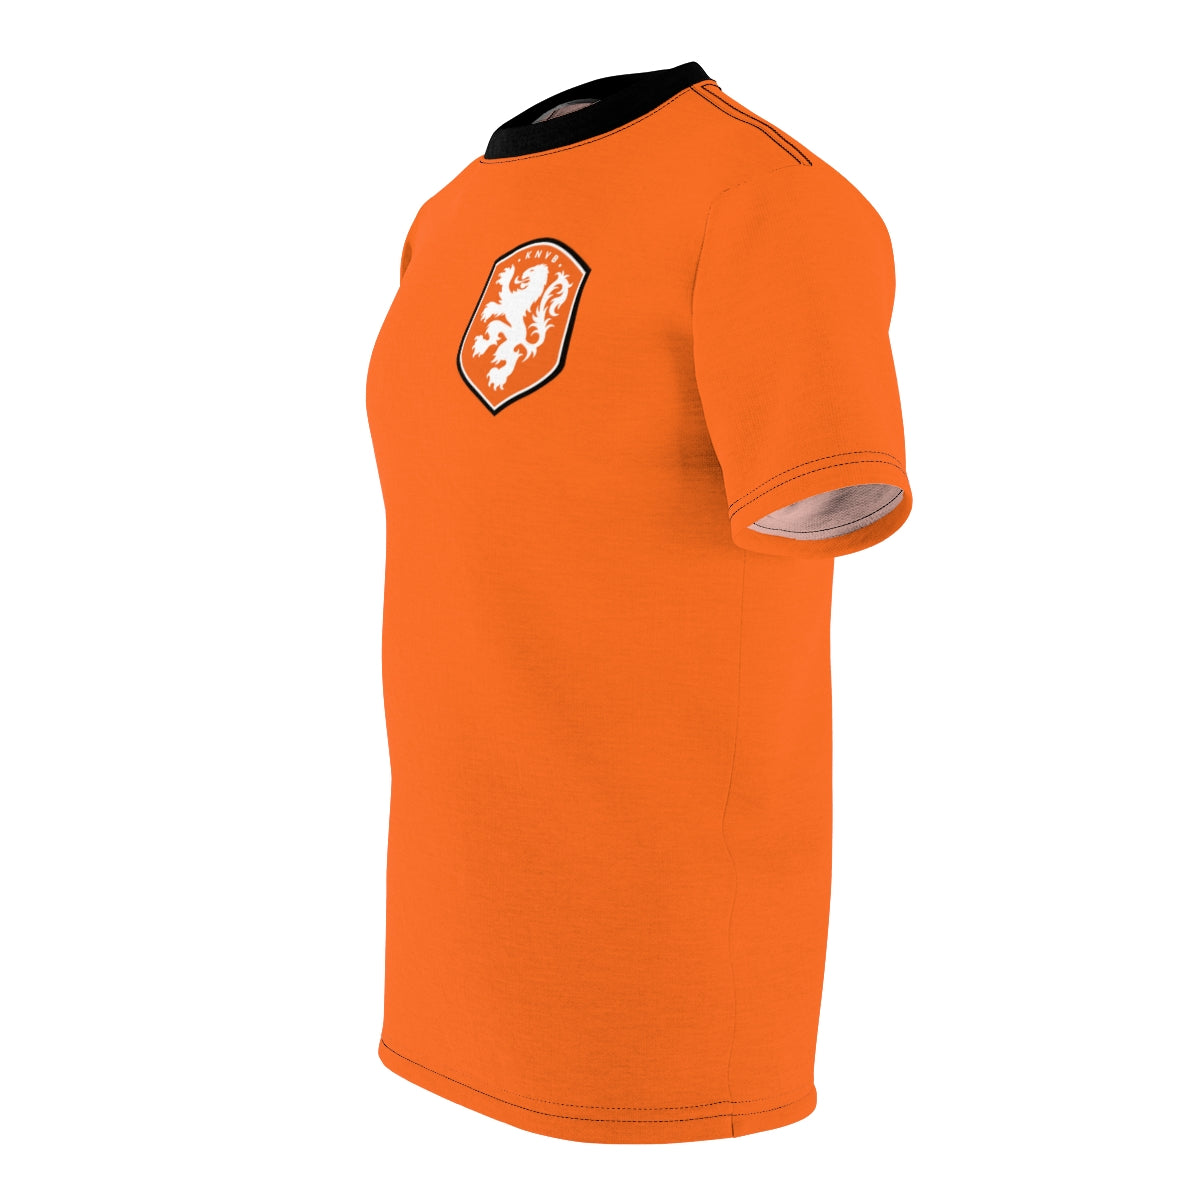 Netherlands KNVB' Men's T-Shirt